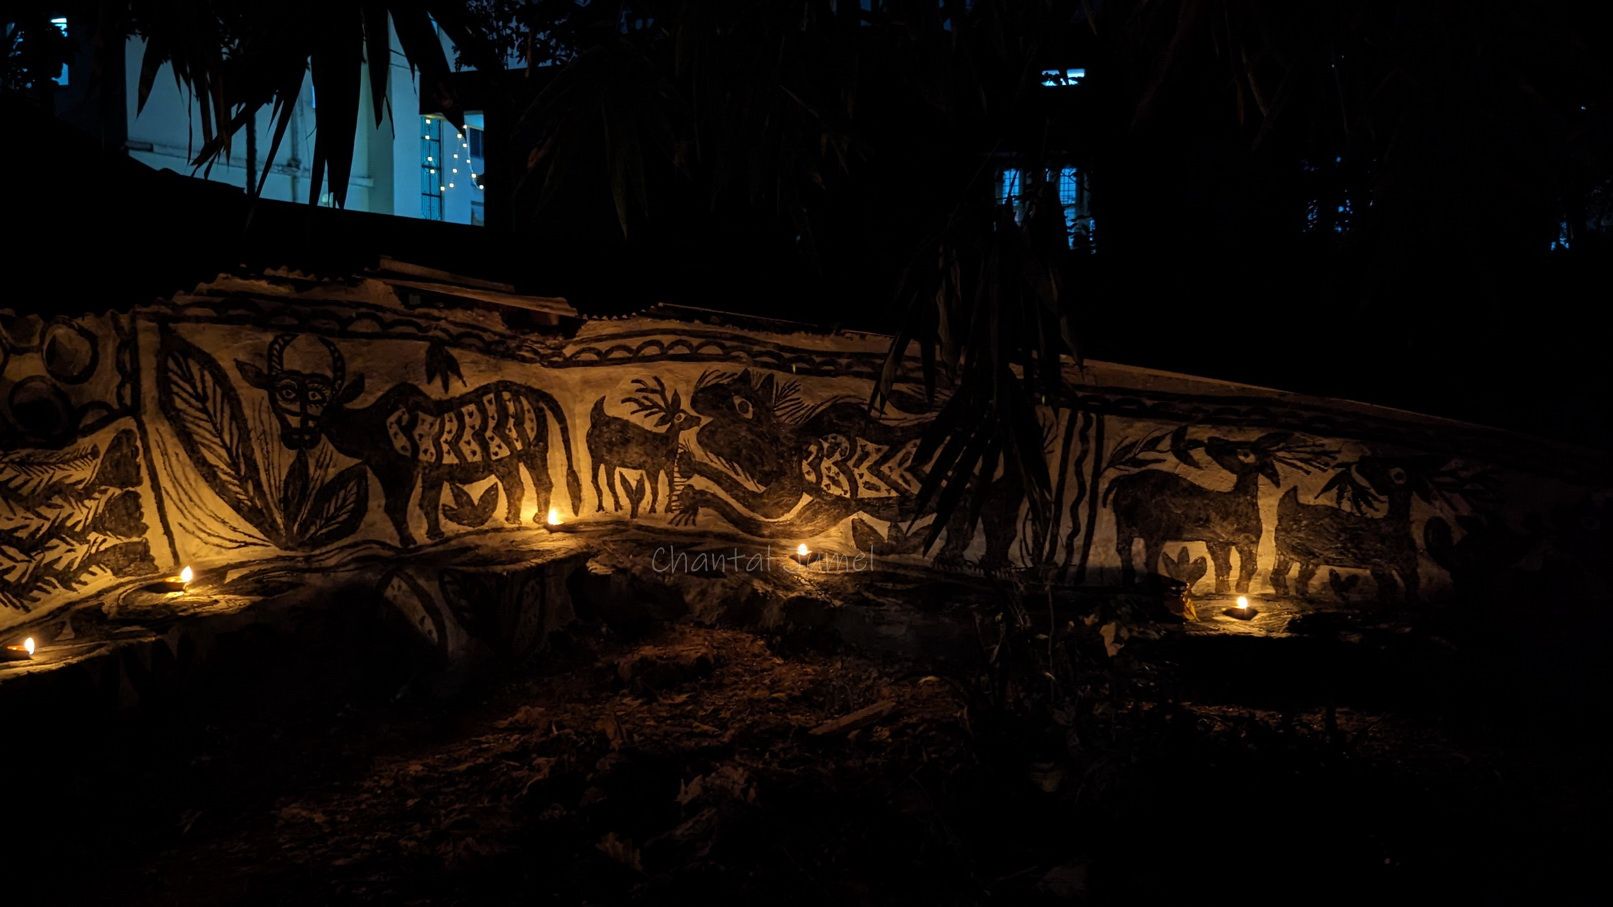 Jharkhand, Hazaribagh "Diwali at the Sanskriti Centre" — part 4